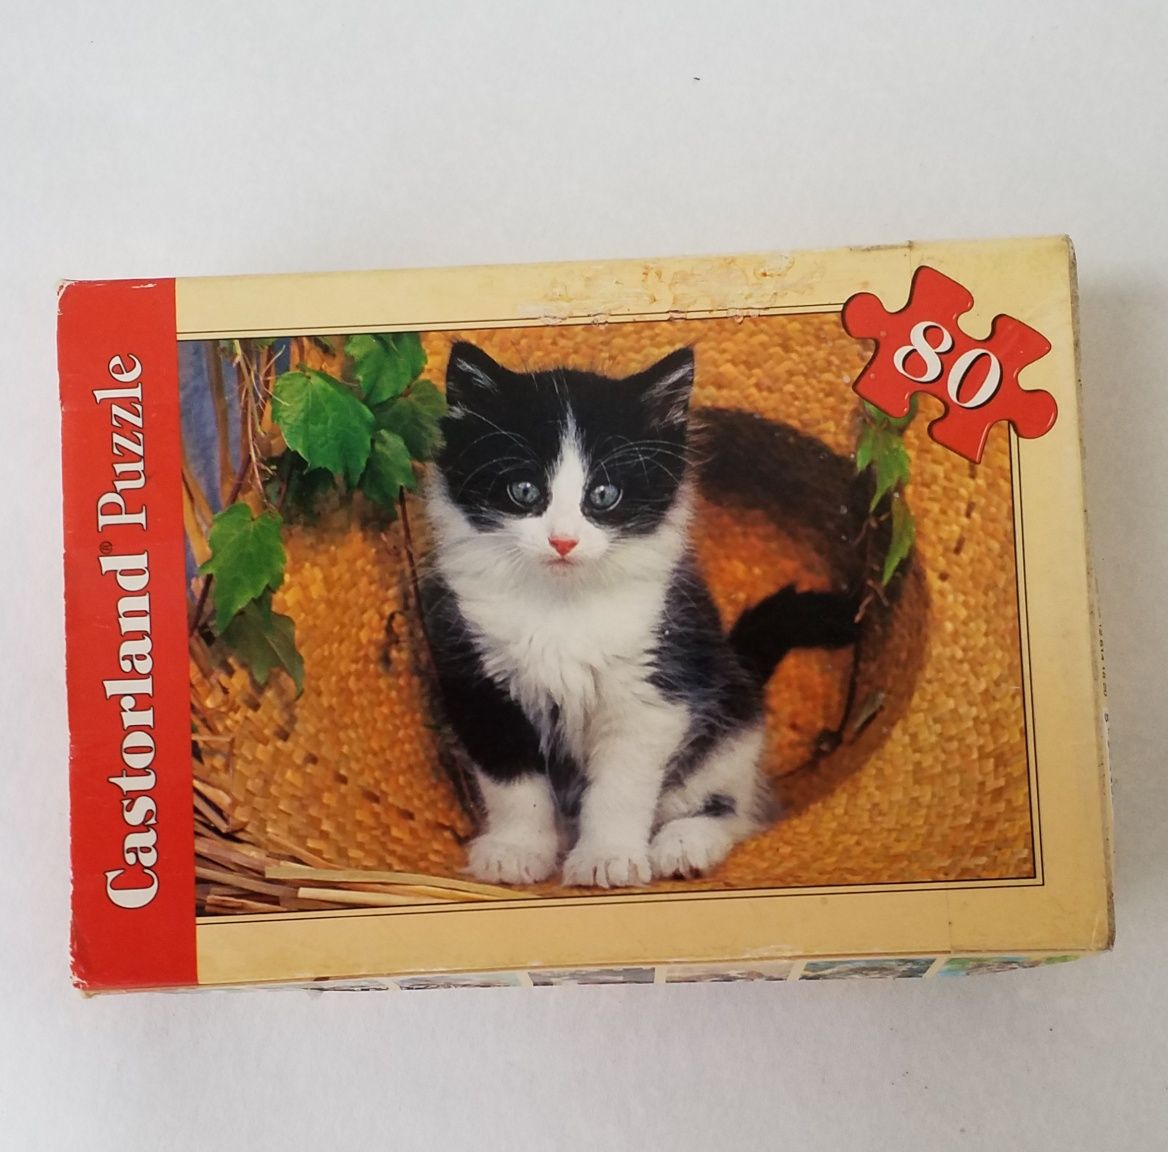 Паззл с черно-белым котёнком от Castorland Puzzle. 80 деталей. Кот